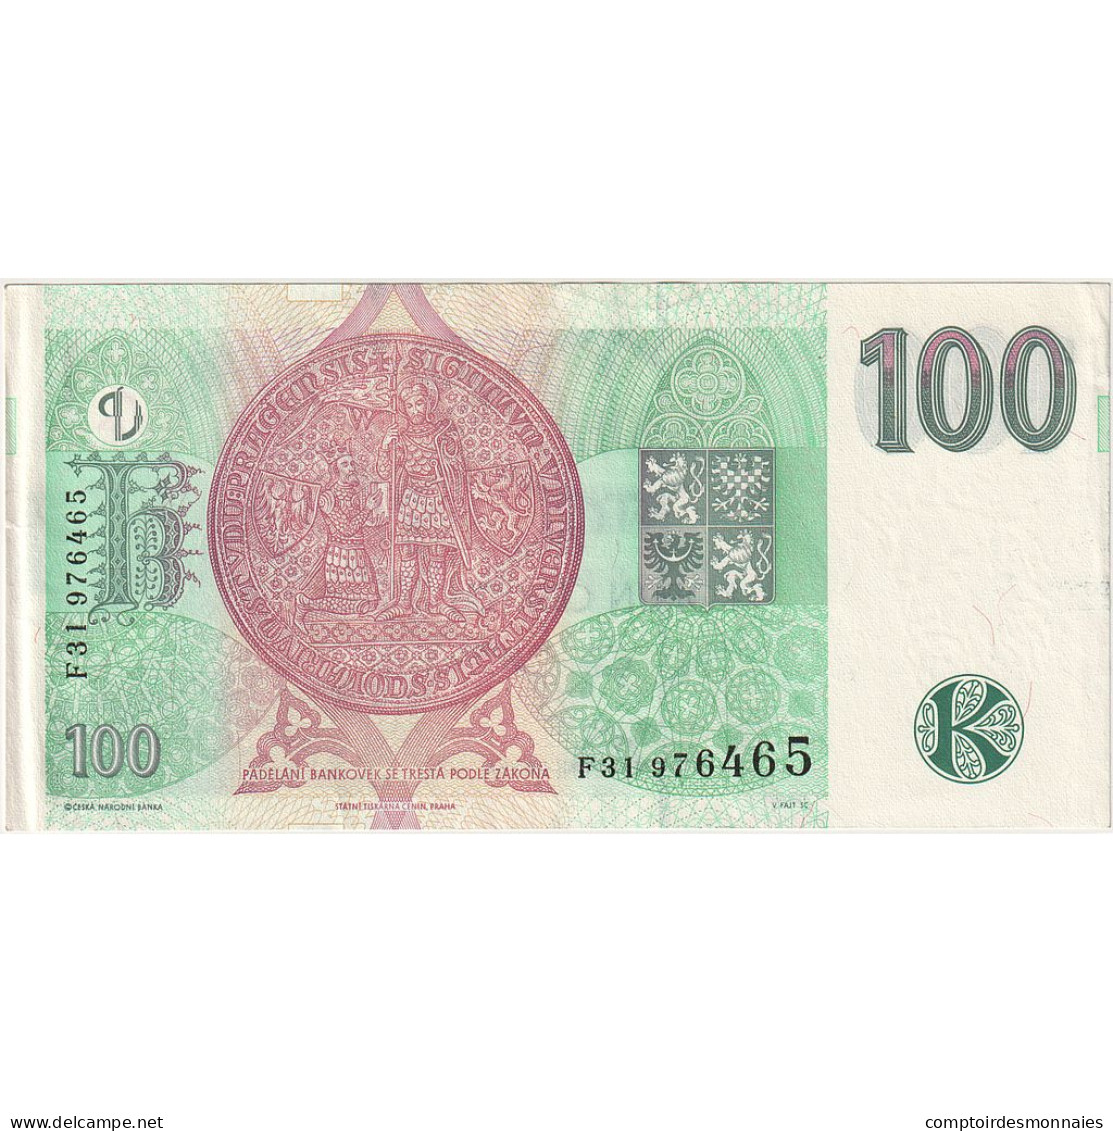 République Tchèque, 100 Korun, 1997, KM:18, NEUF - Czechoslovakia